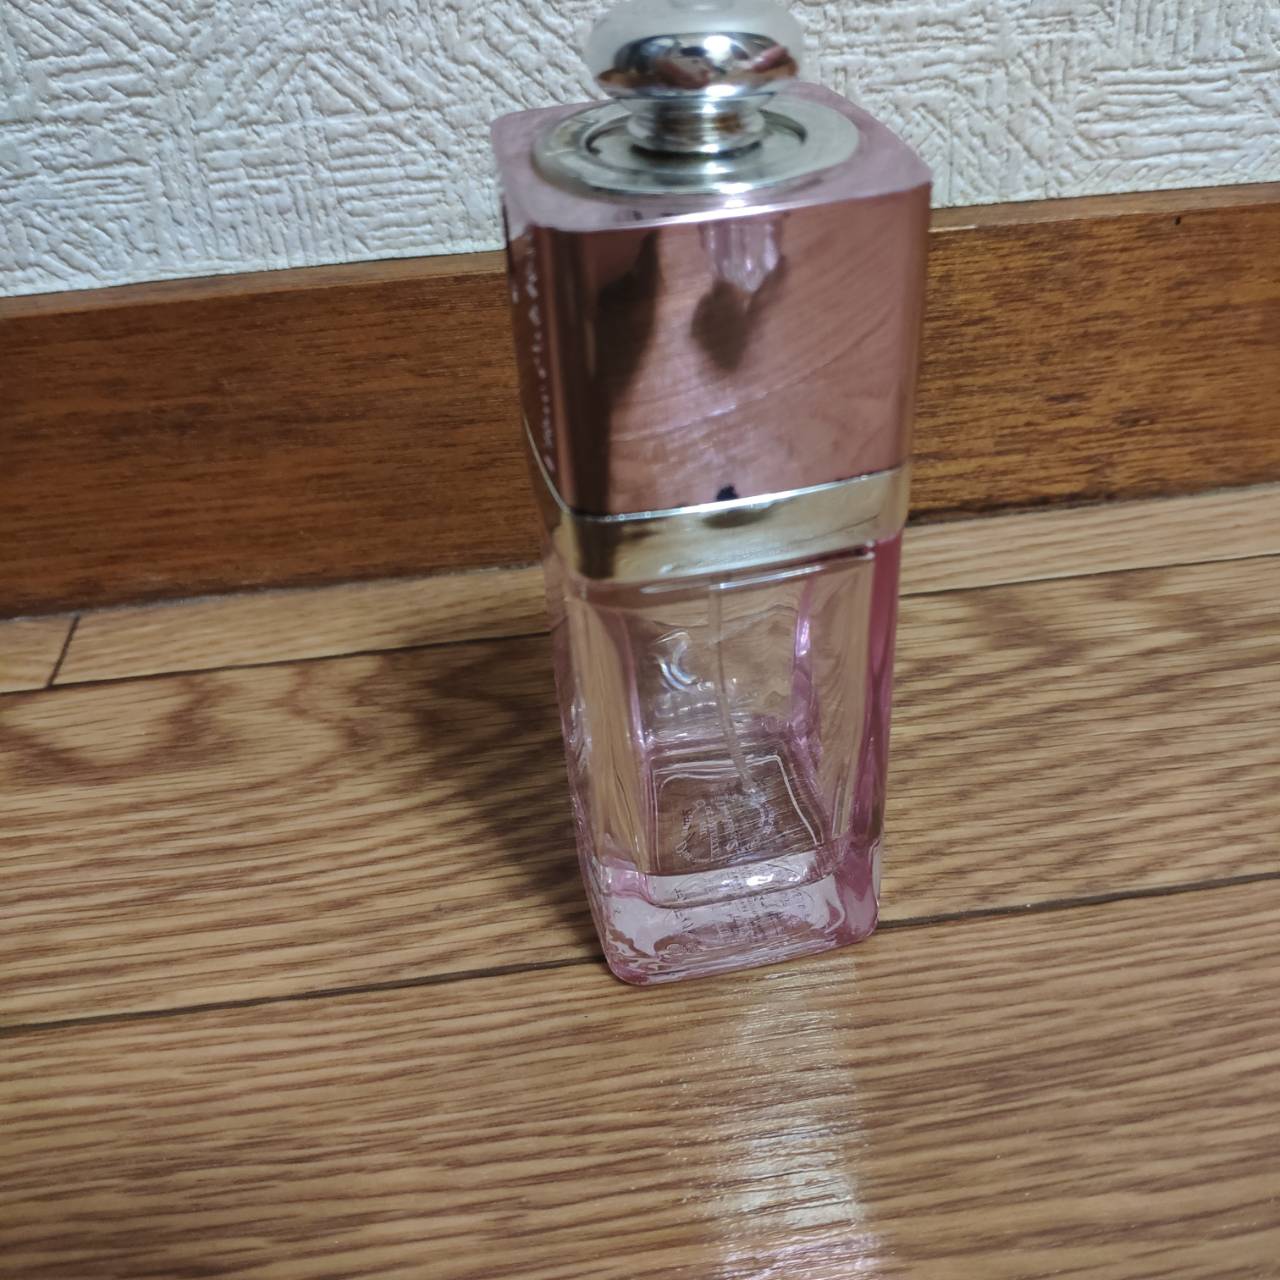 クリスチャンディオール(Christian Dior)の香水「アディクトオー 